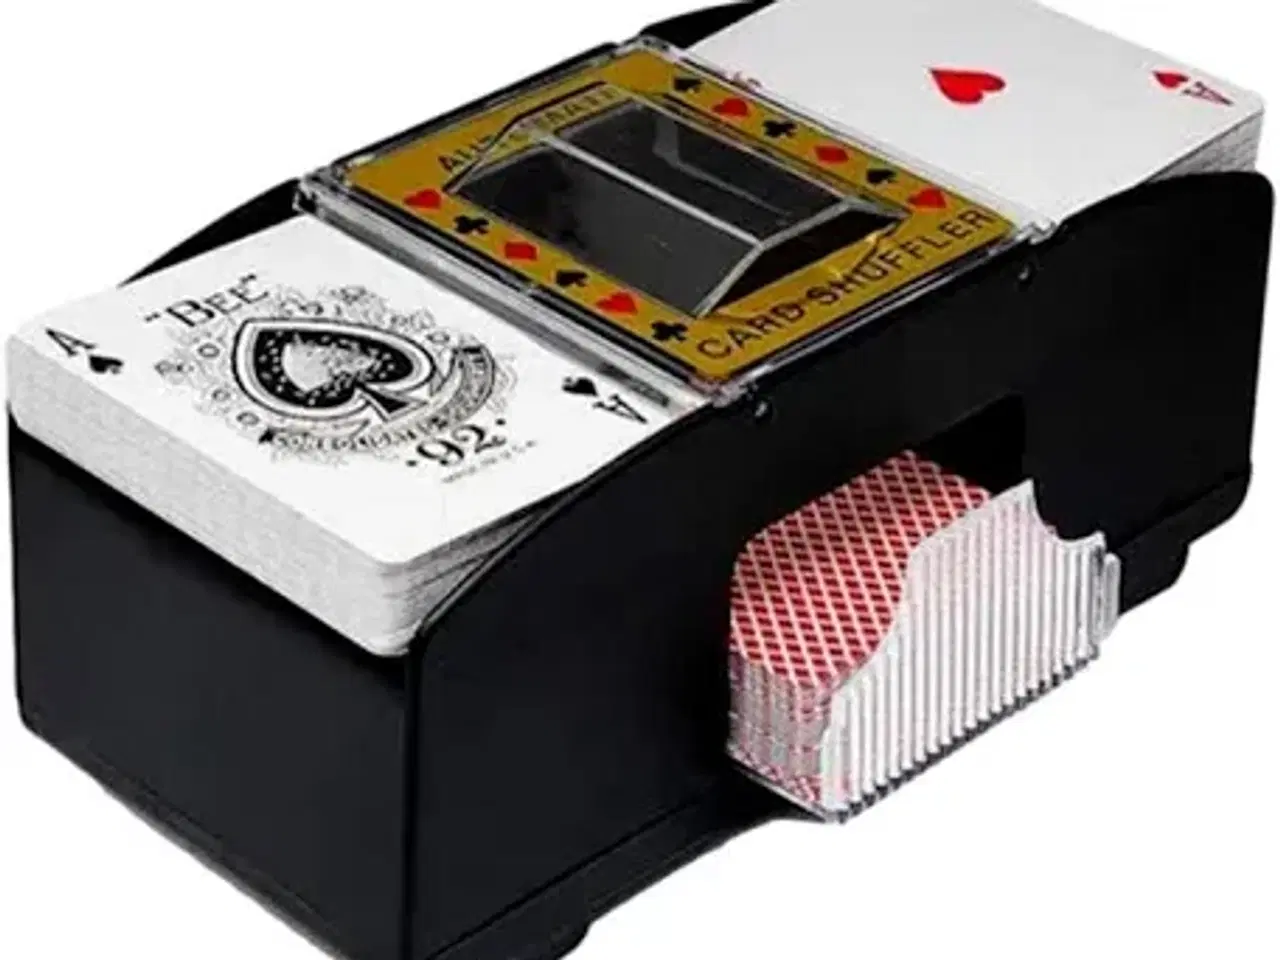 Billede 5 - FCK poker sæt med fck logo på